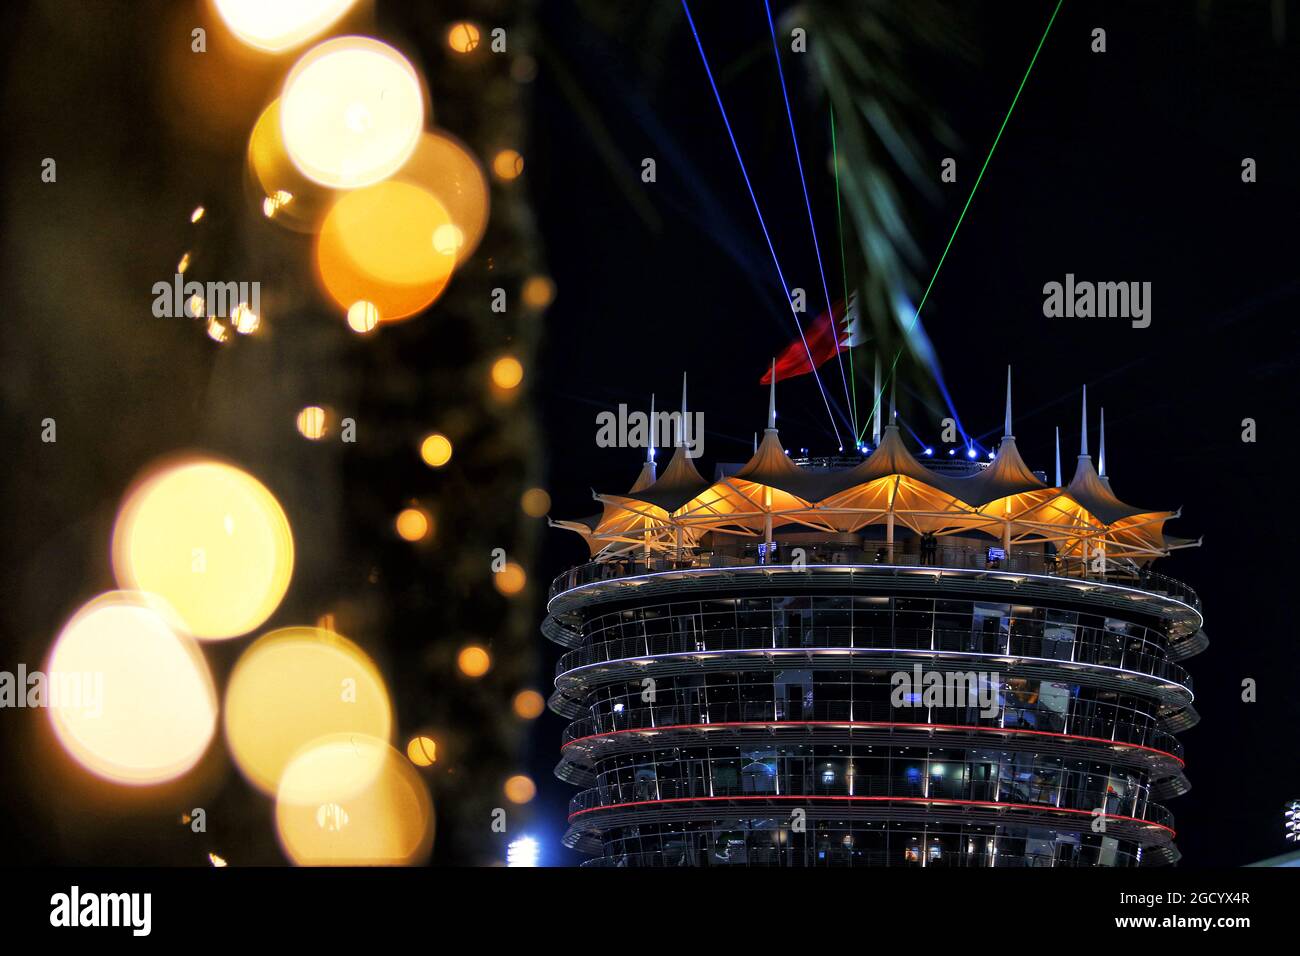 Le paddock la nuit. Grand Prix de Bahreïn, vendredi 29 mars 2019. Sakhir, Bahreïn. Banque D'Images